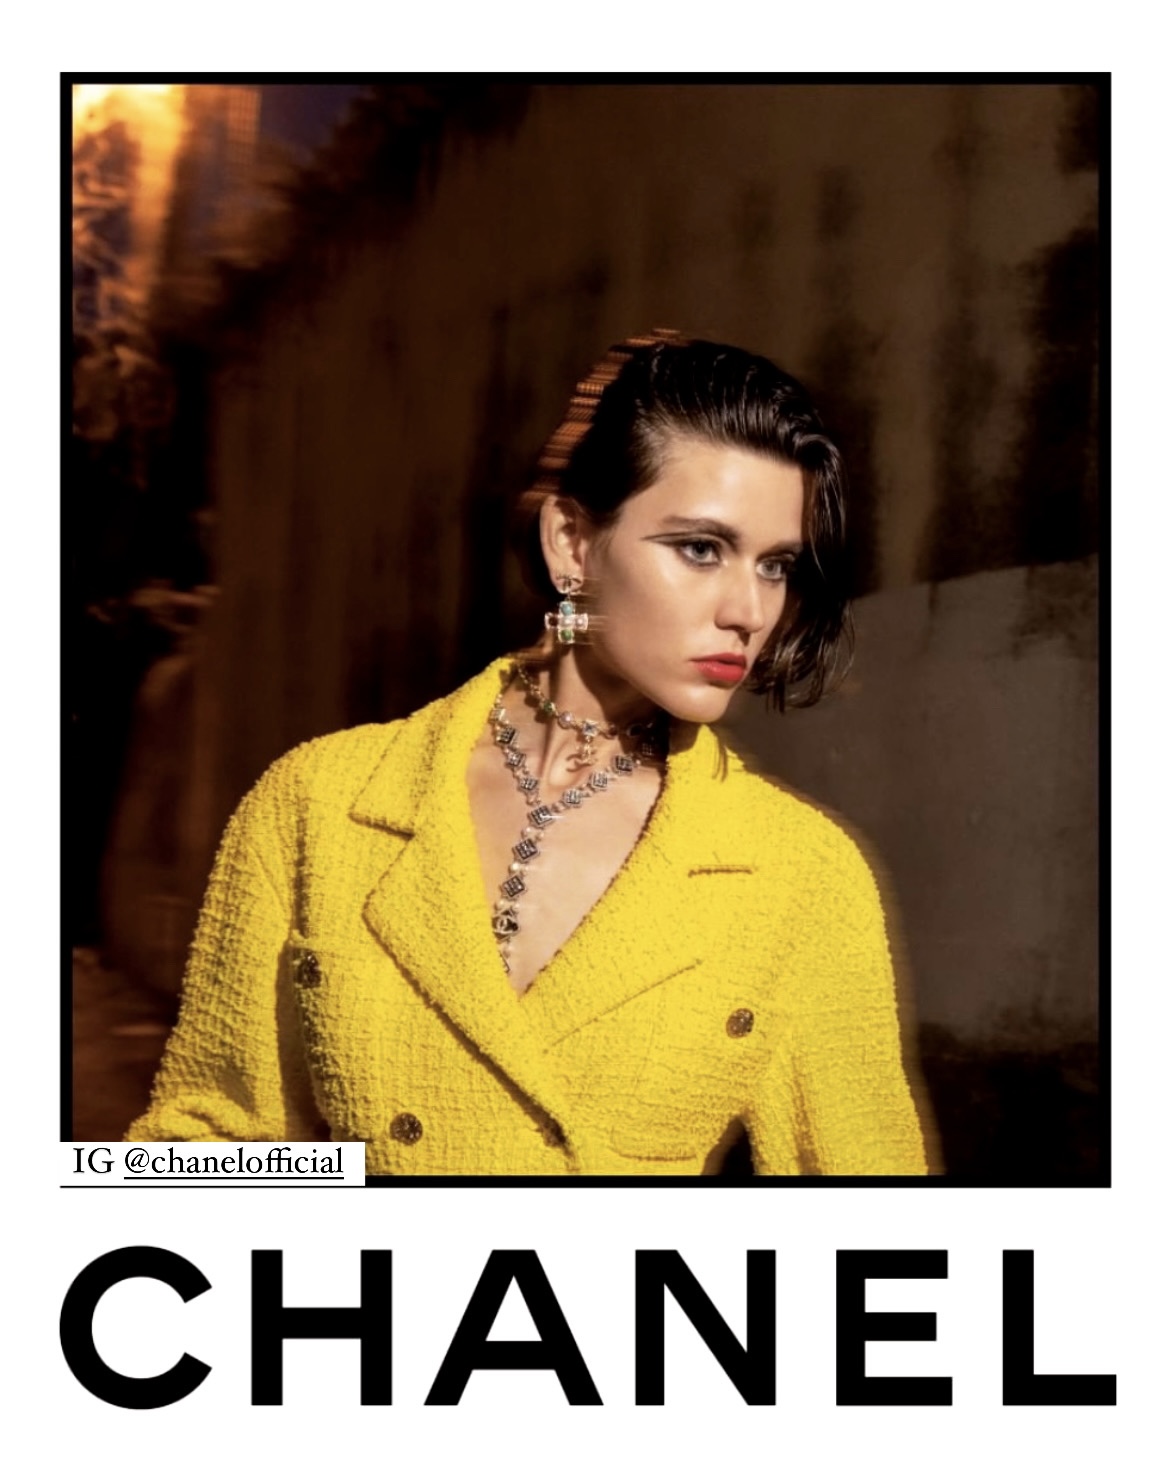 Chanel fashion